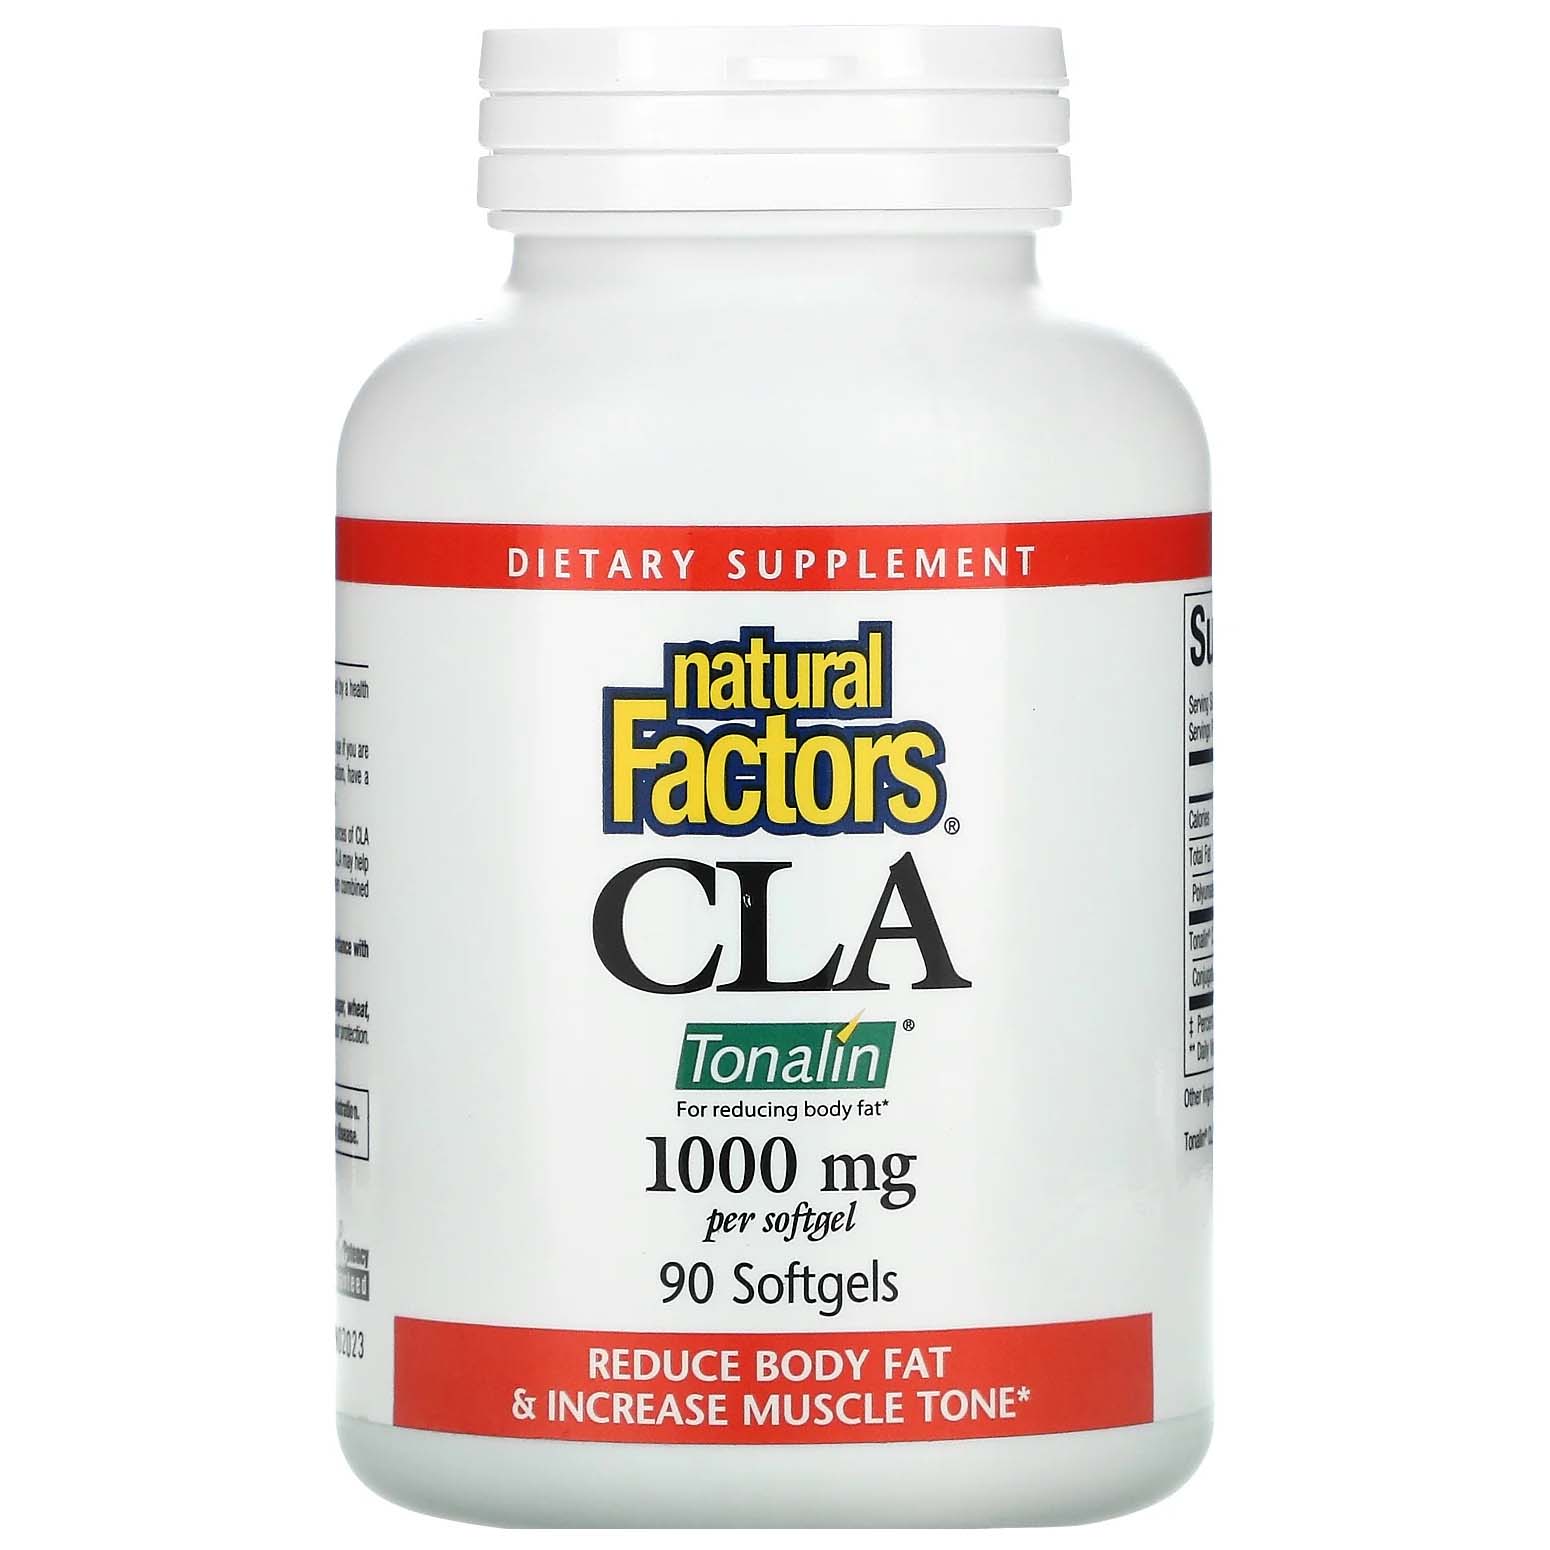 Natural Factors Tonalin Cla, 1000 mg, 90 Softgels